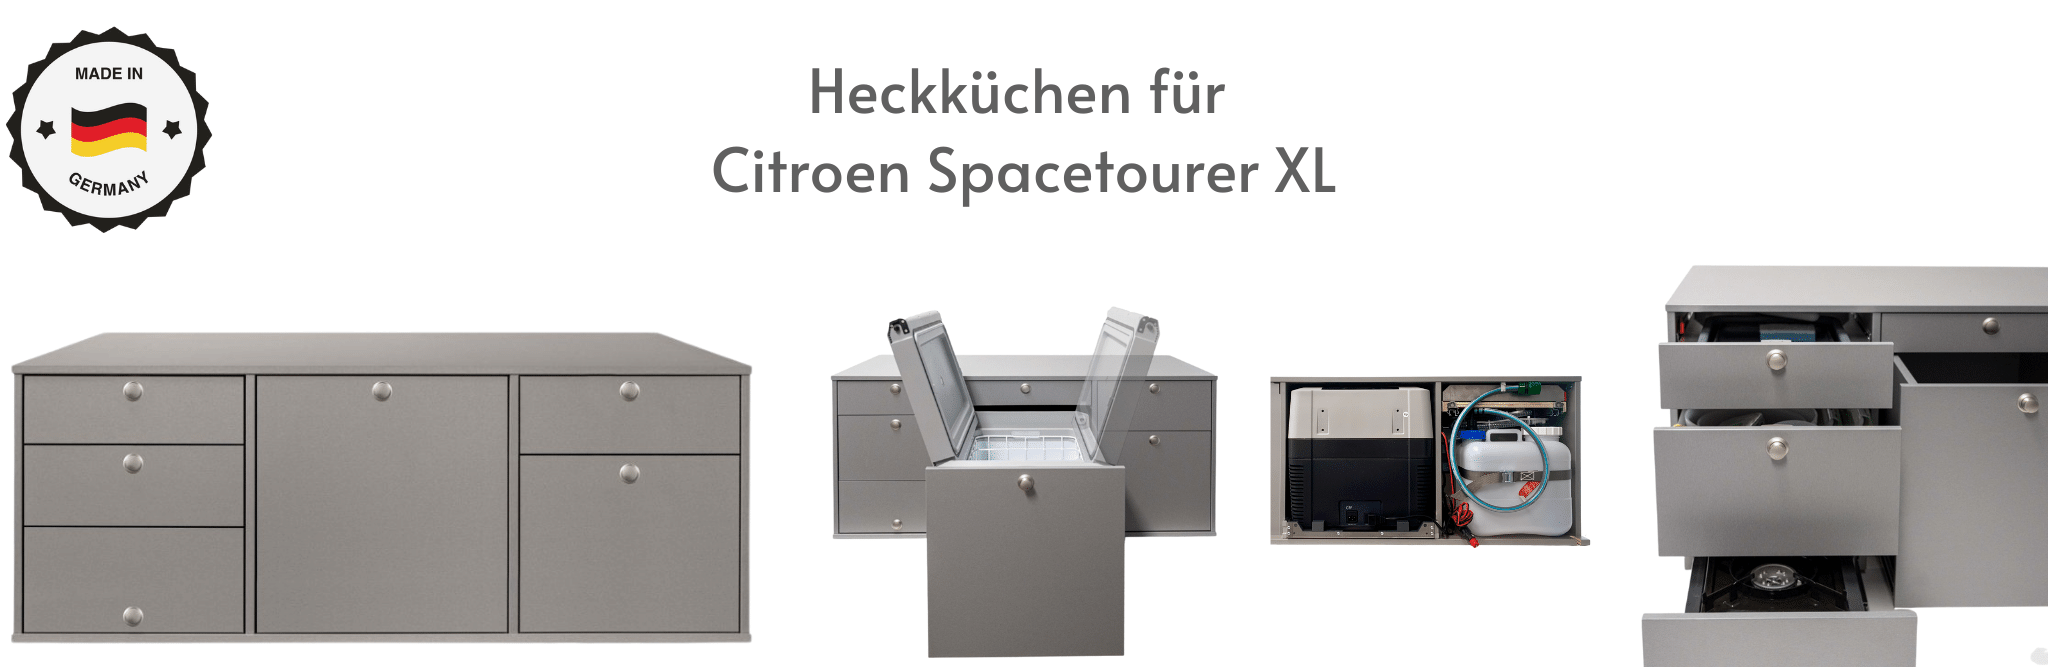 Heckküchen für Citroen Spacetourer XL